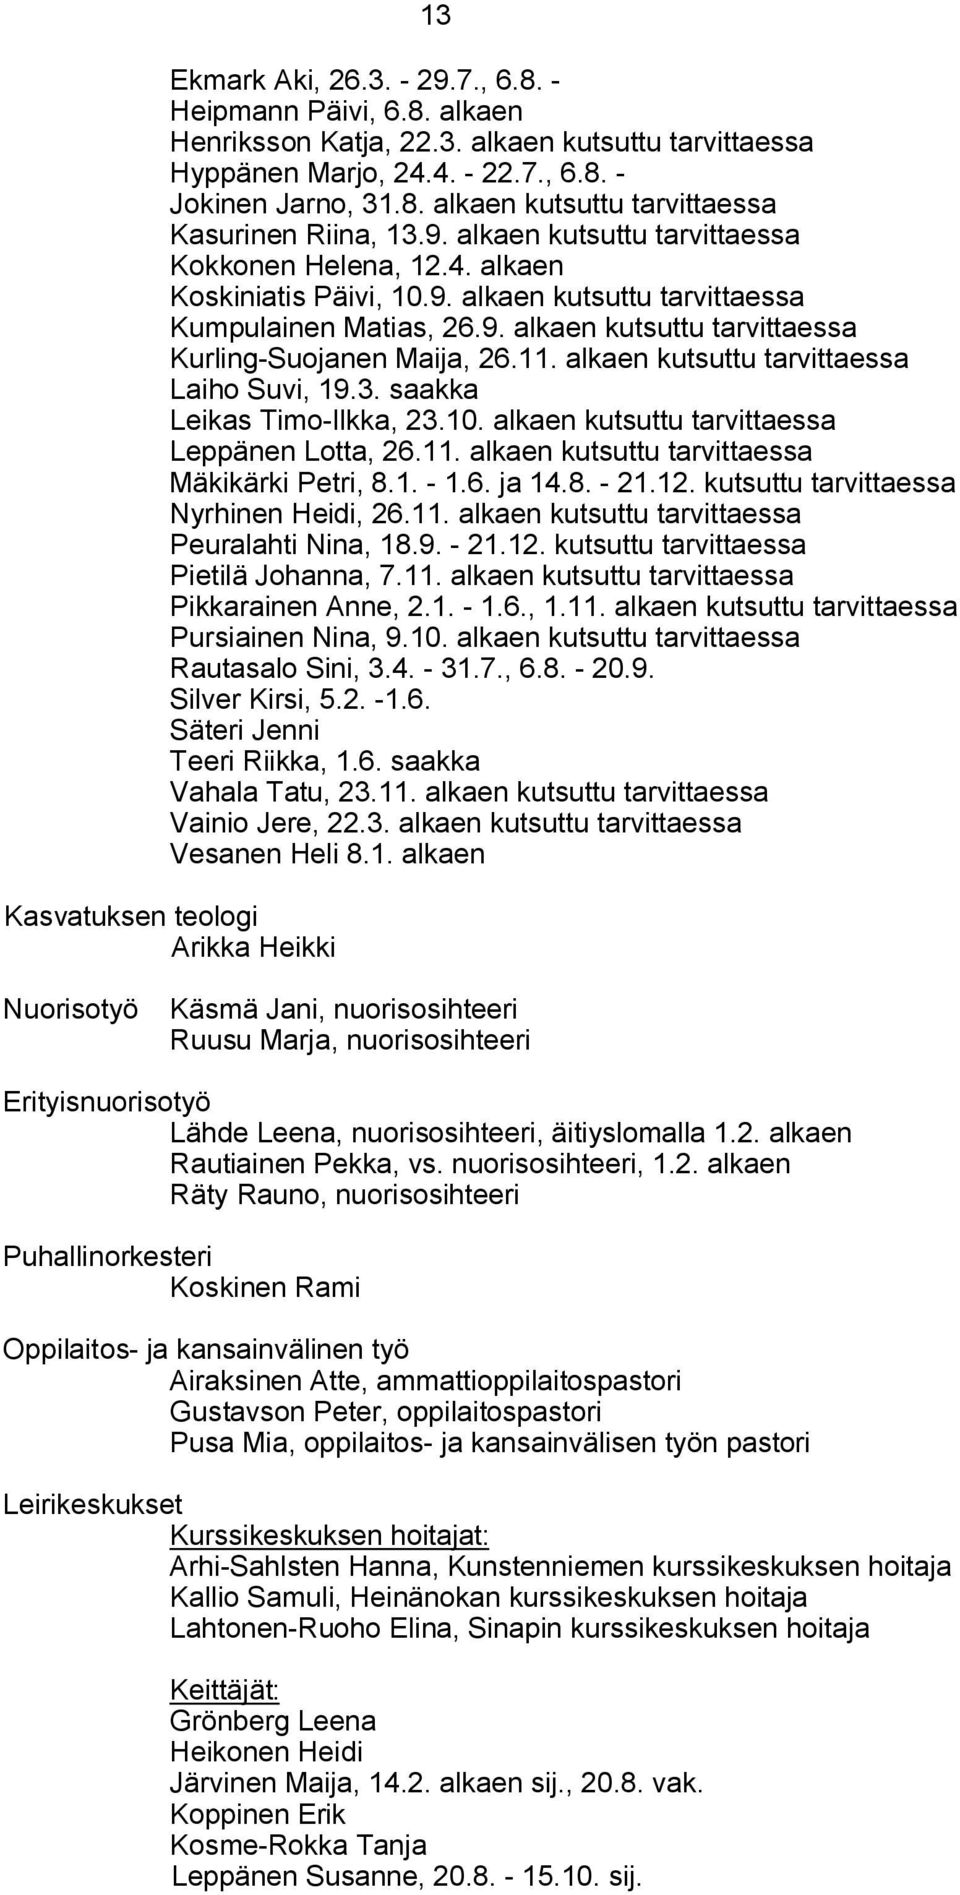 11. alkaen kutsuttu tarvittaessa Laiho Suvi, 19.3. saakka Leikas Timo Ilkka, 23.10. alkaen kutsuttu tarvittaessa Leppänen Lotta, 26.11. alkaen kutsuttu tarvittaessa Mäkikärki Petri, 8.1. 1.6. ja 14.8. 21.